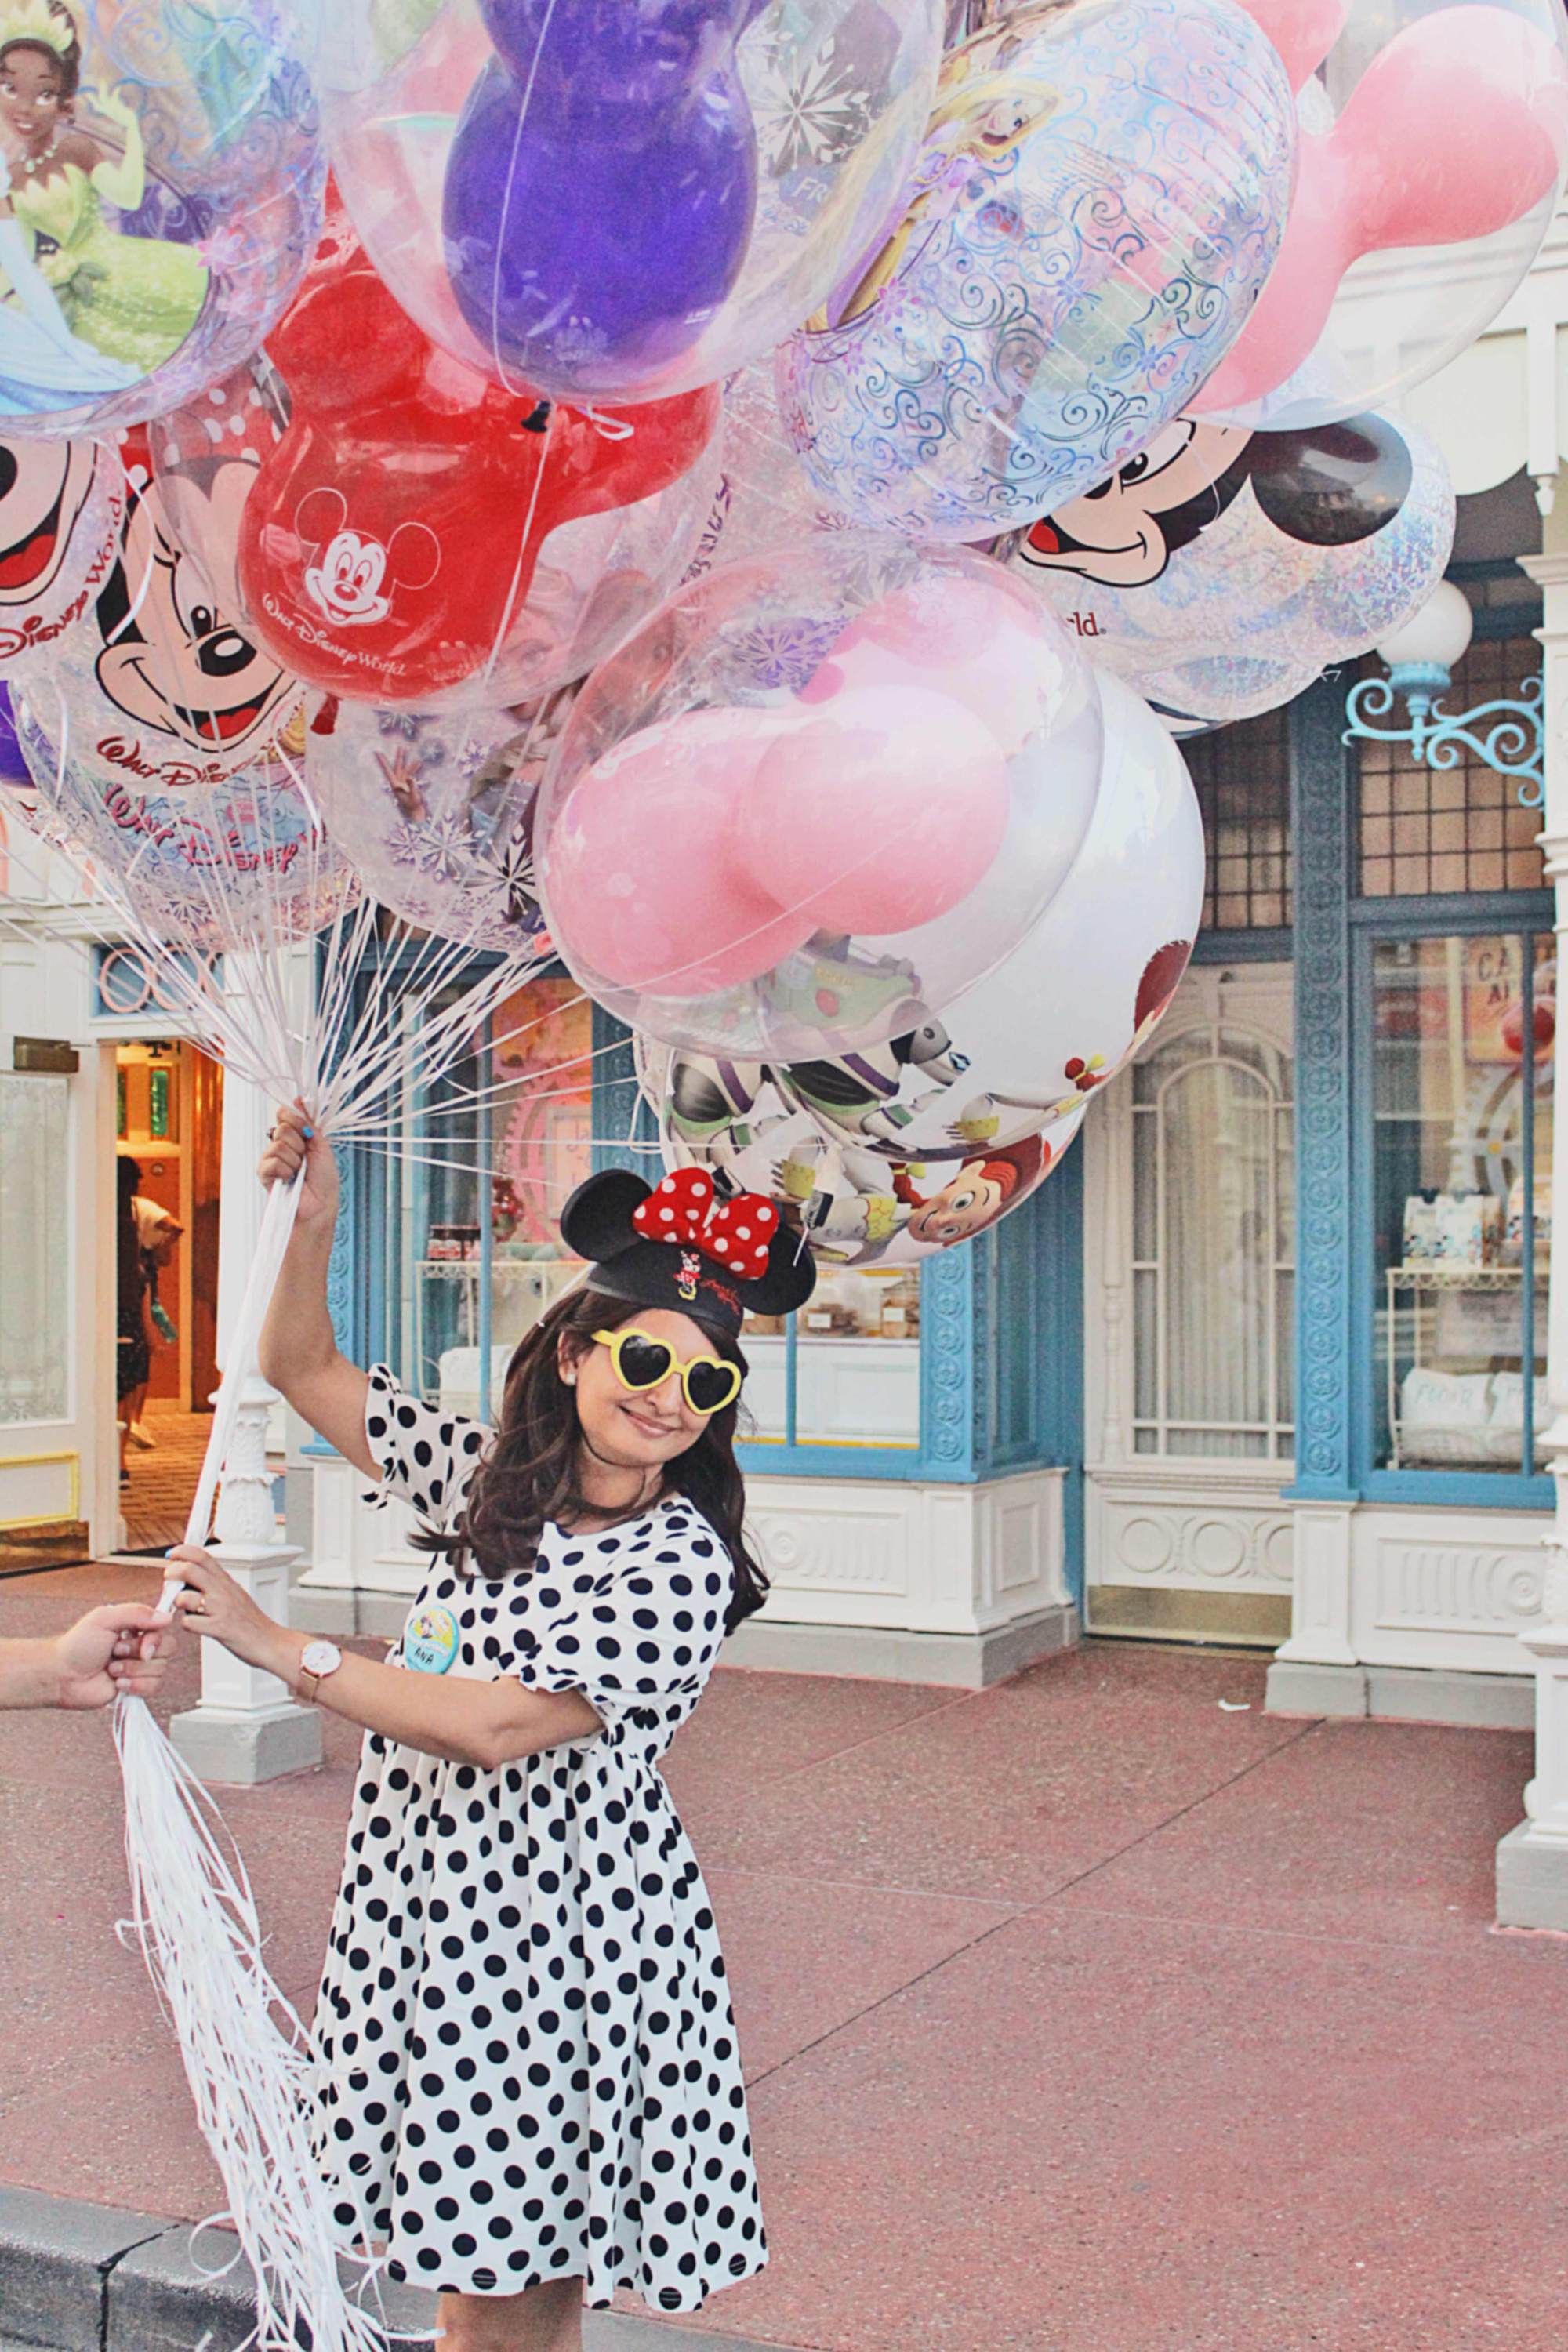 Disney Balloons Make an Awesome Vacation Souvenir 